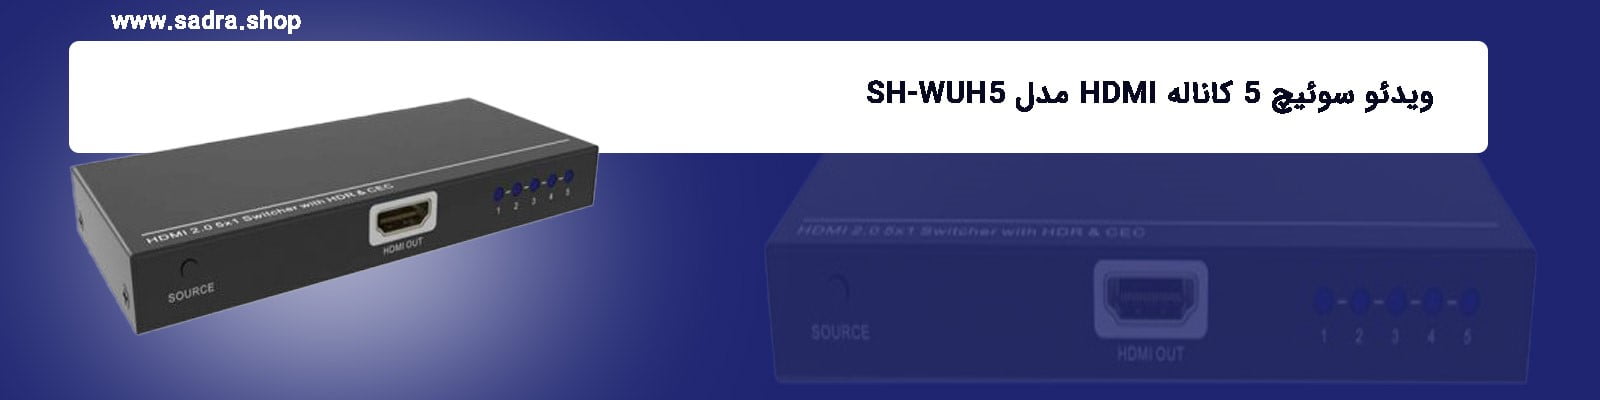 ویدئو سوئیچ 5 کاناله HDMI مدل SH-WUH5_1